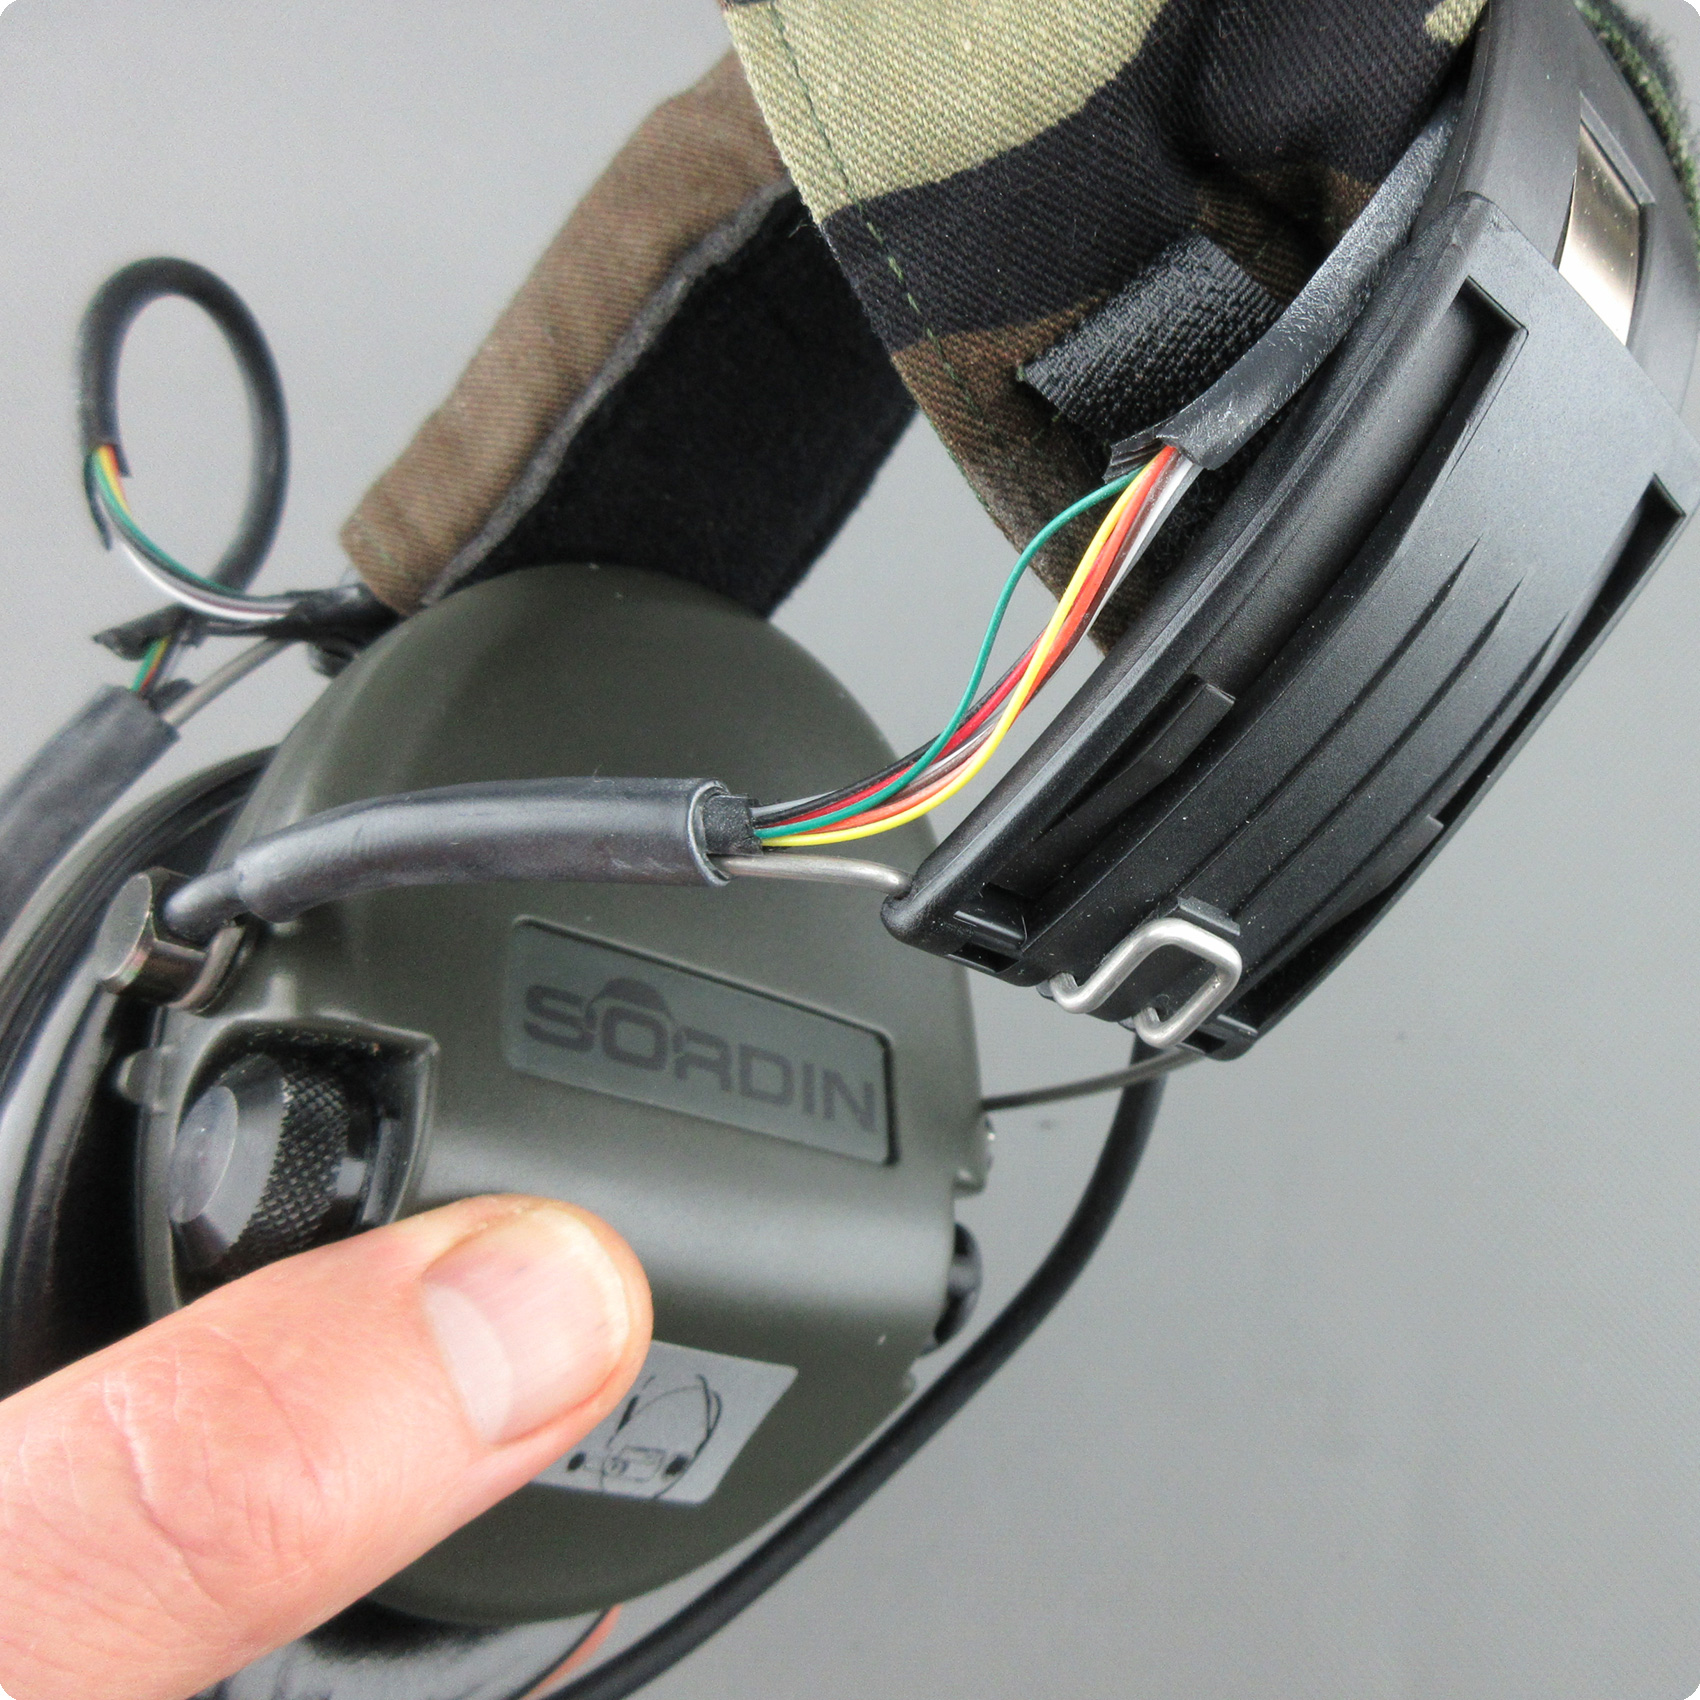 Reparación de cables de conexión MSA-Sordin: reparación de cables rotos, daños en los soportes